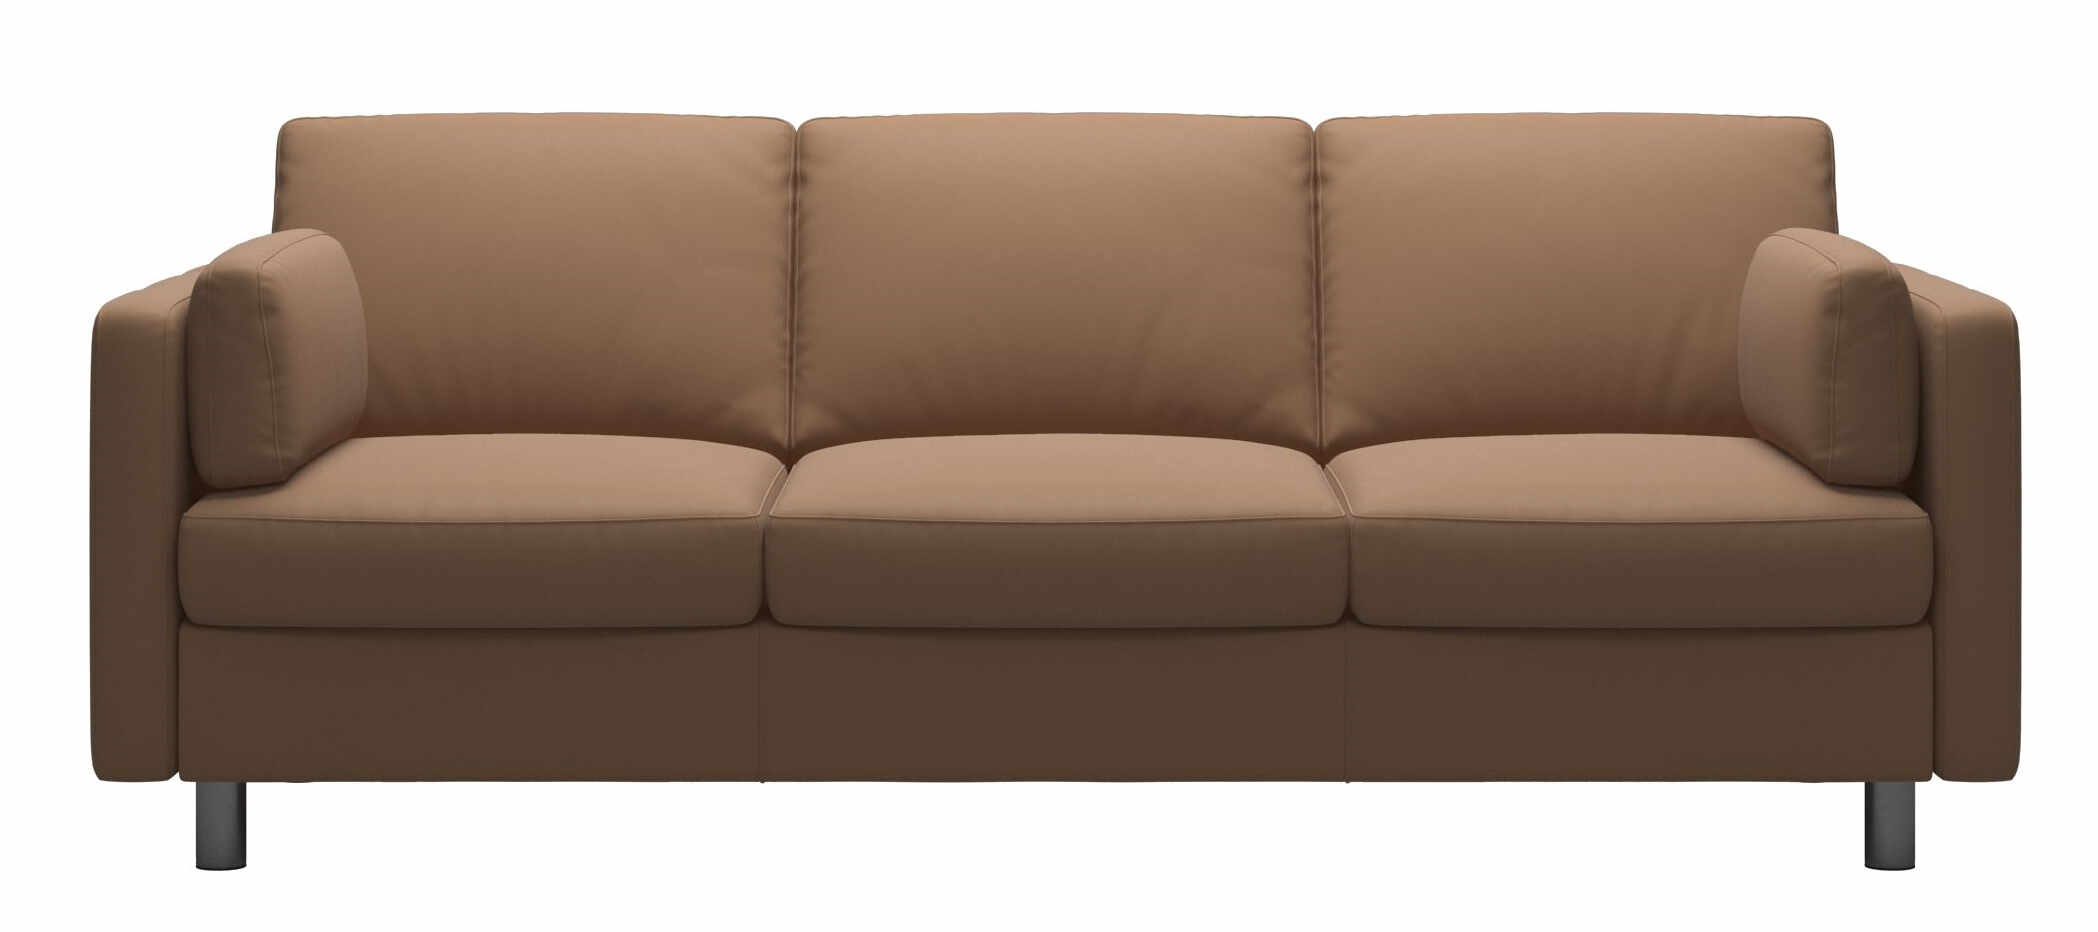 Canapea cu 3 locuri Stressless Emma E600 Classic picioare metalice 11cm piele Batik Latte